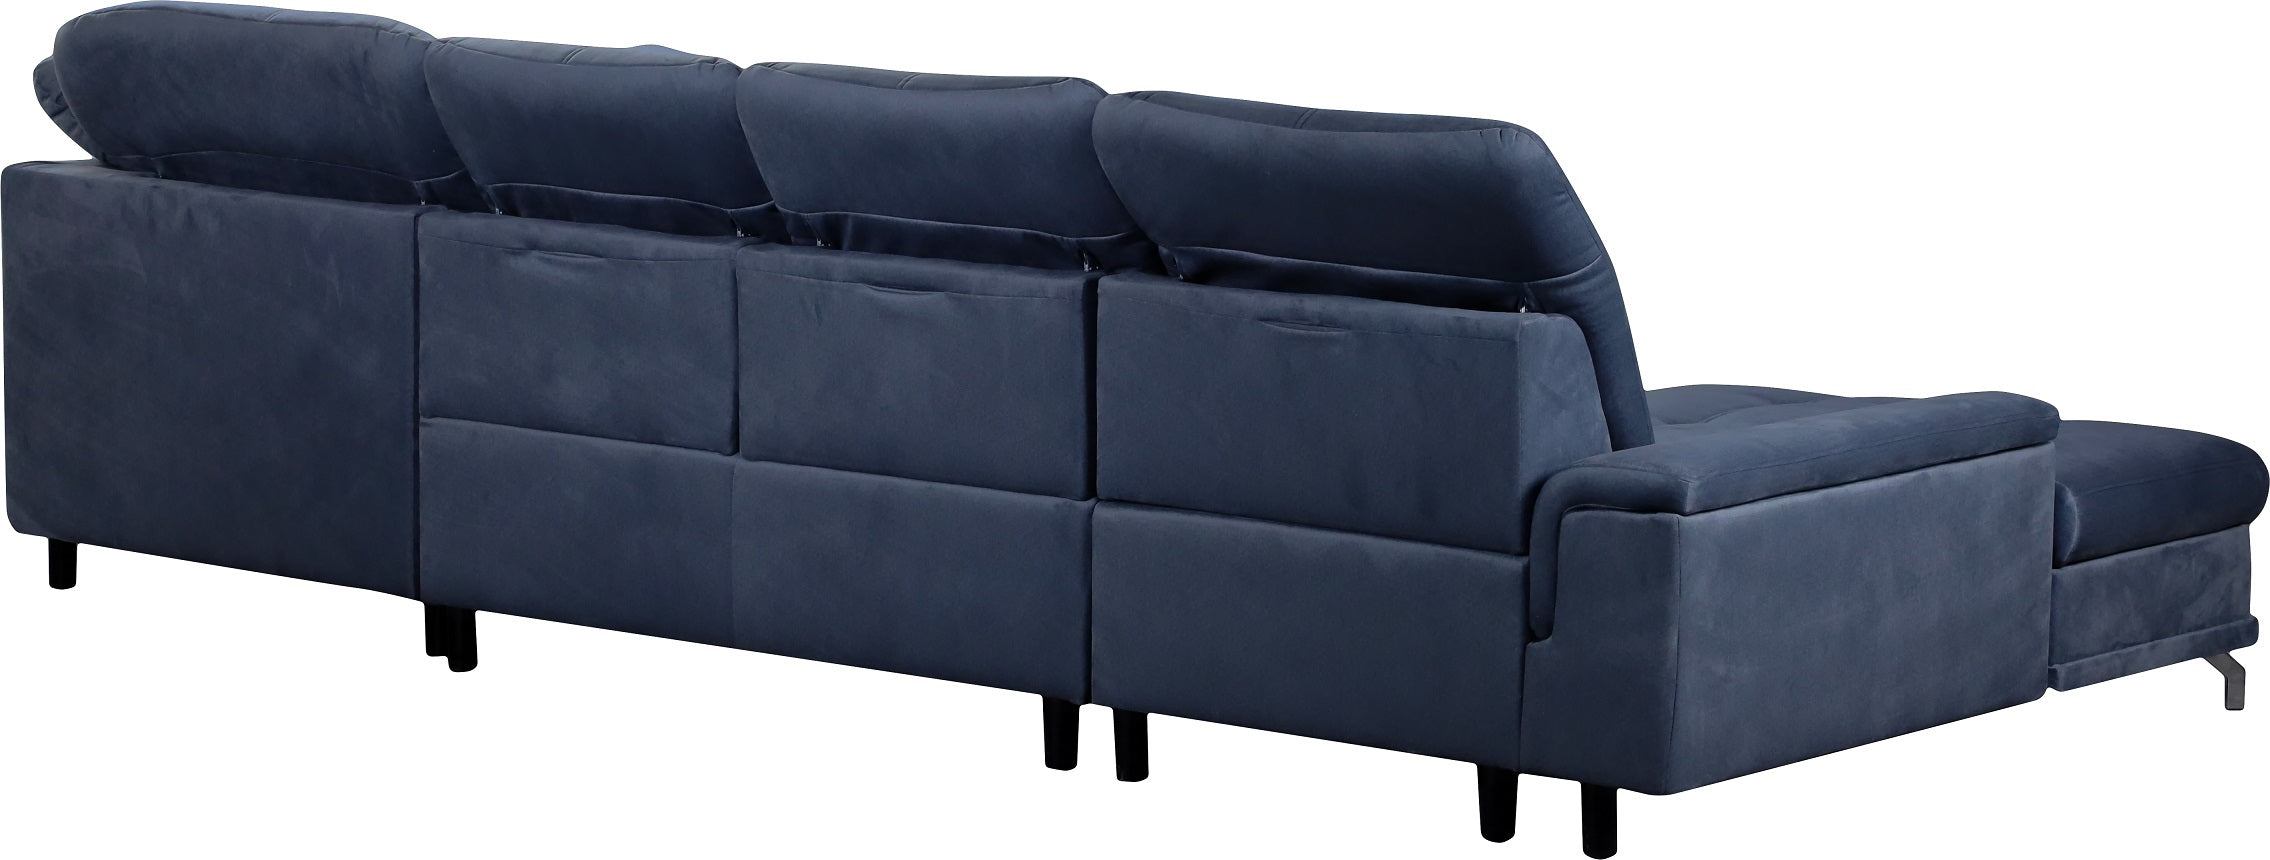 Vista trasera de sofá en forma de U modelo brita